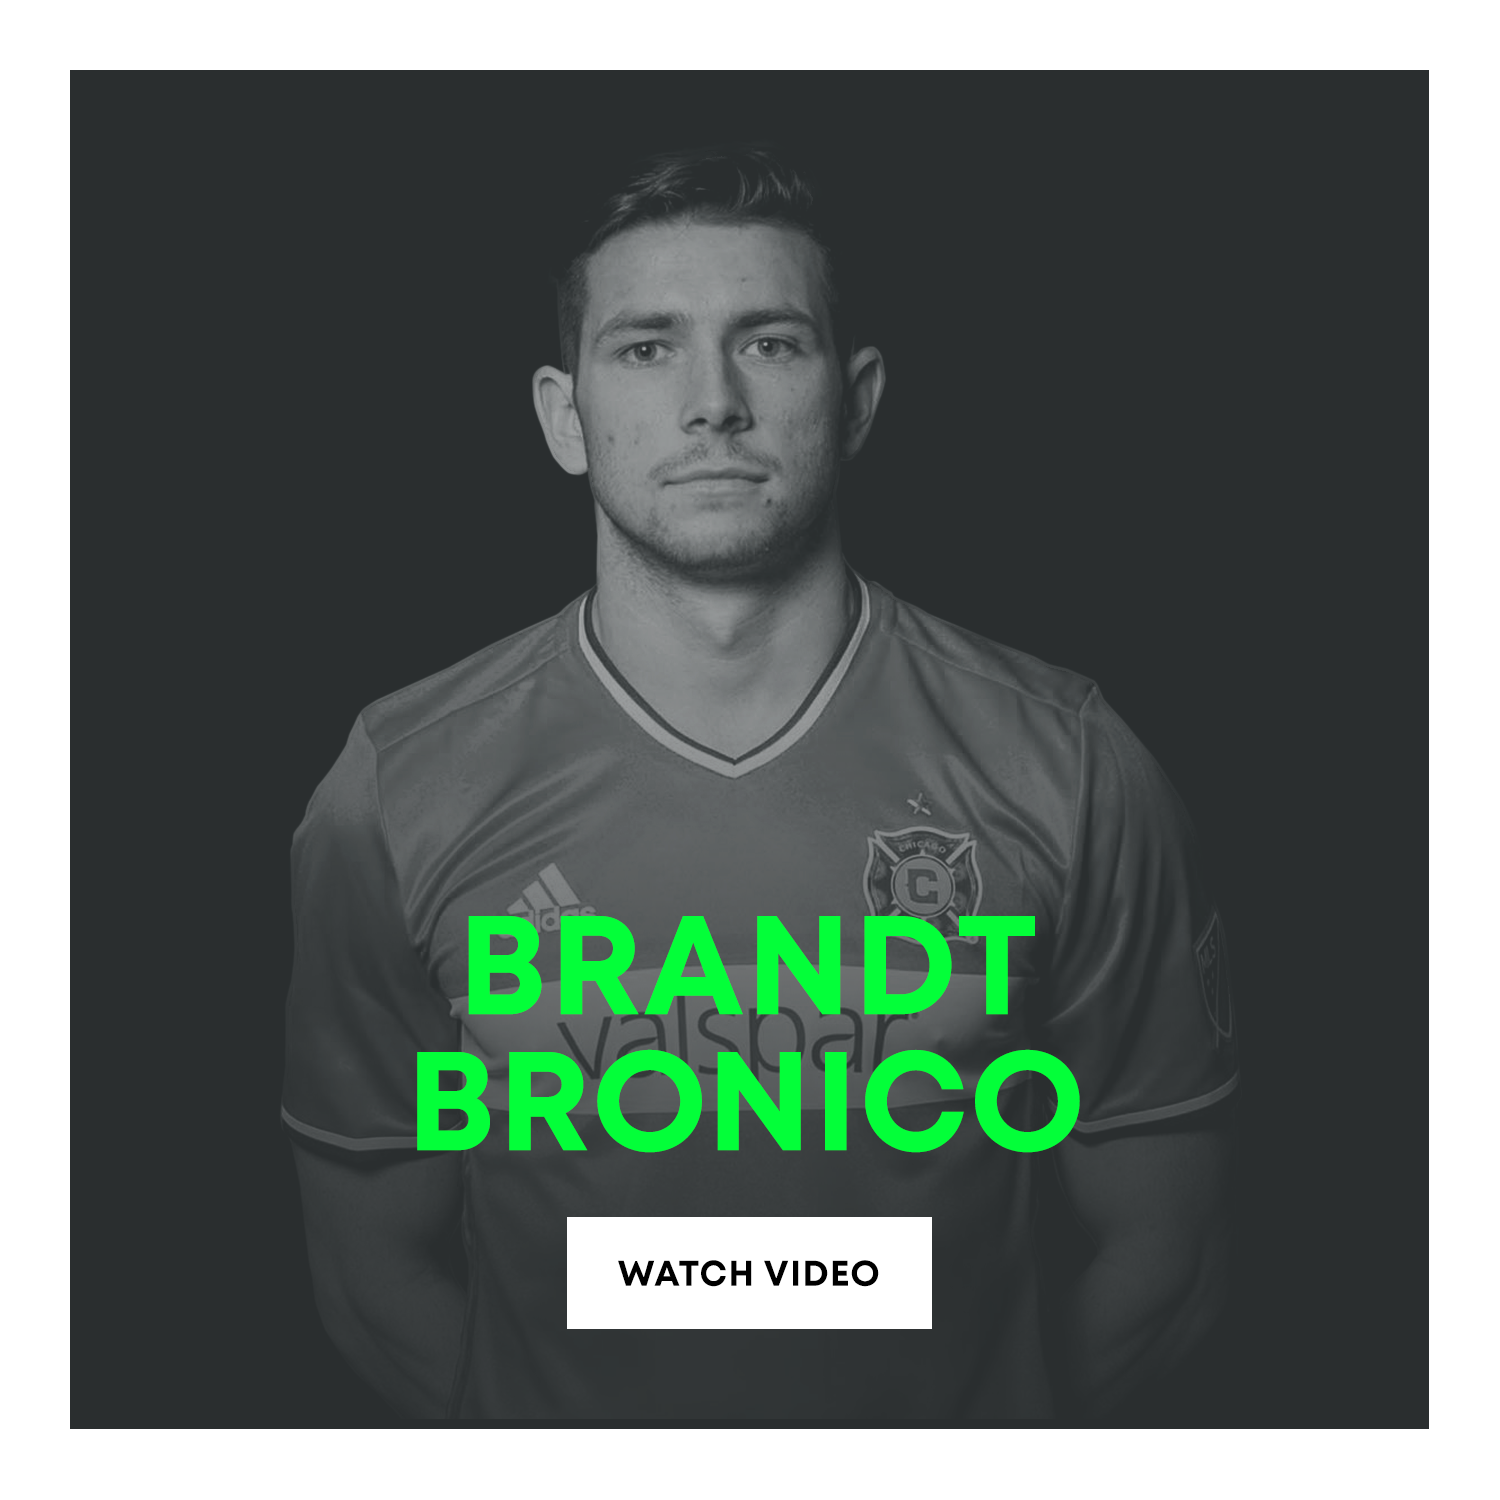 Brandt Bronico